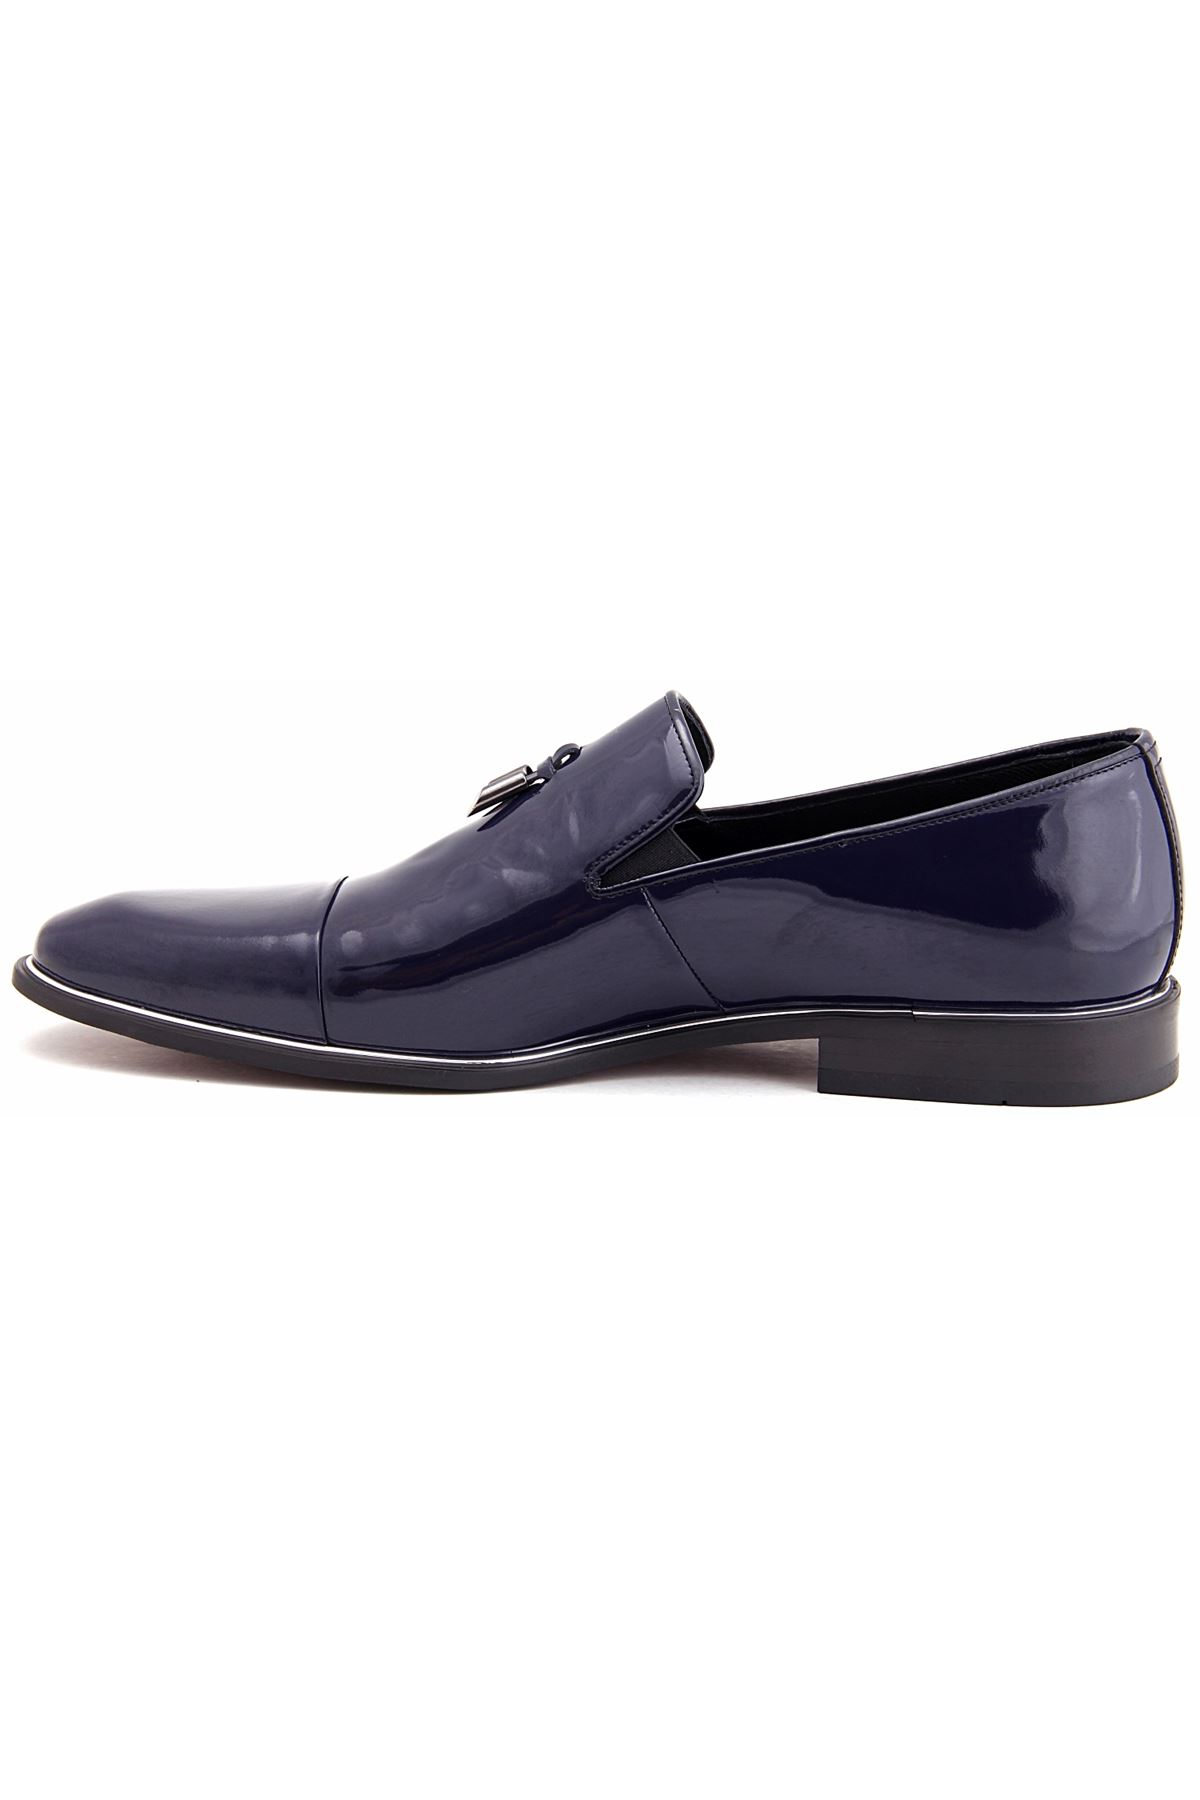 Libero 2385 Klasik Erkek Ayakkabı - Lacivert Rugan